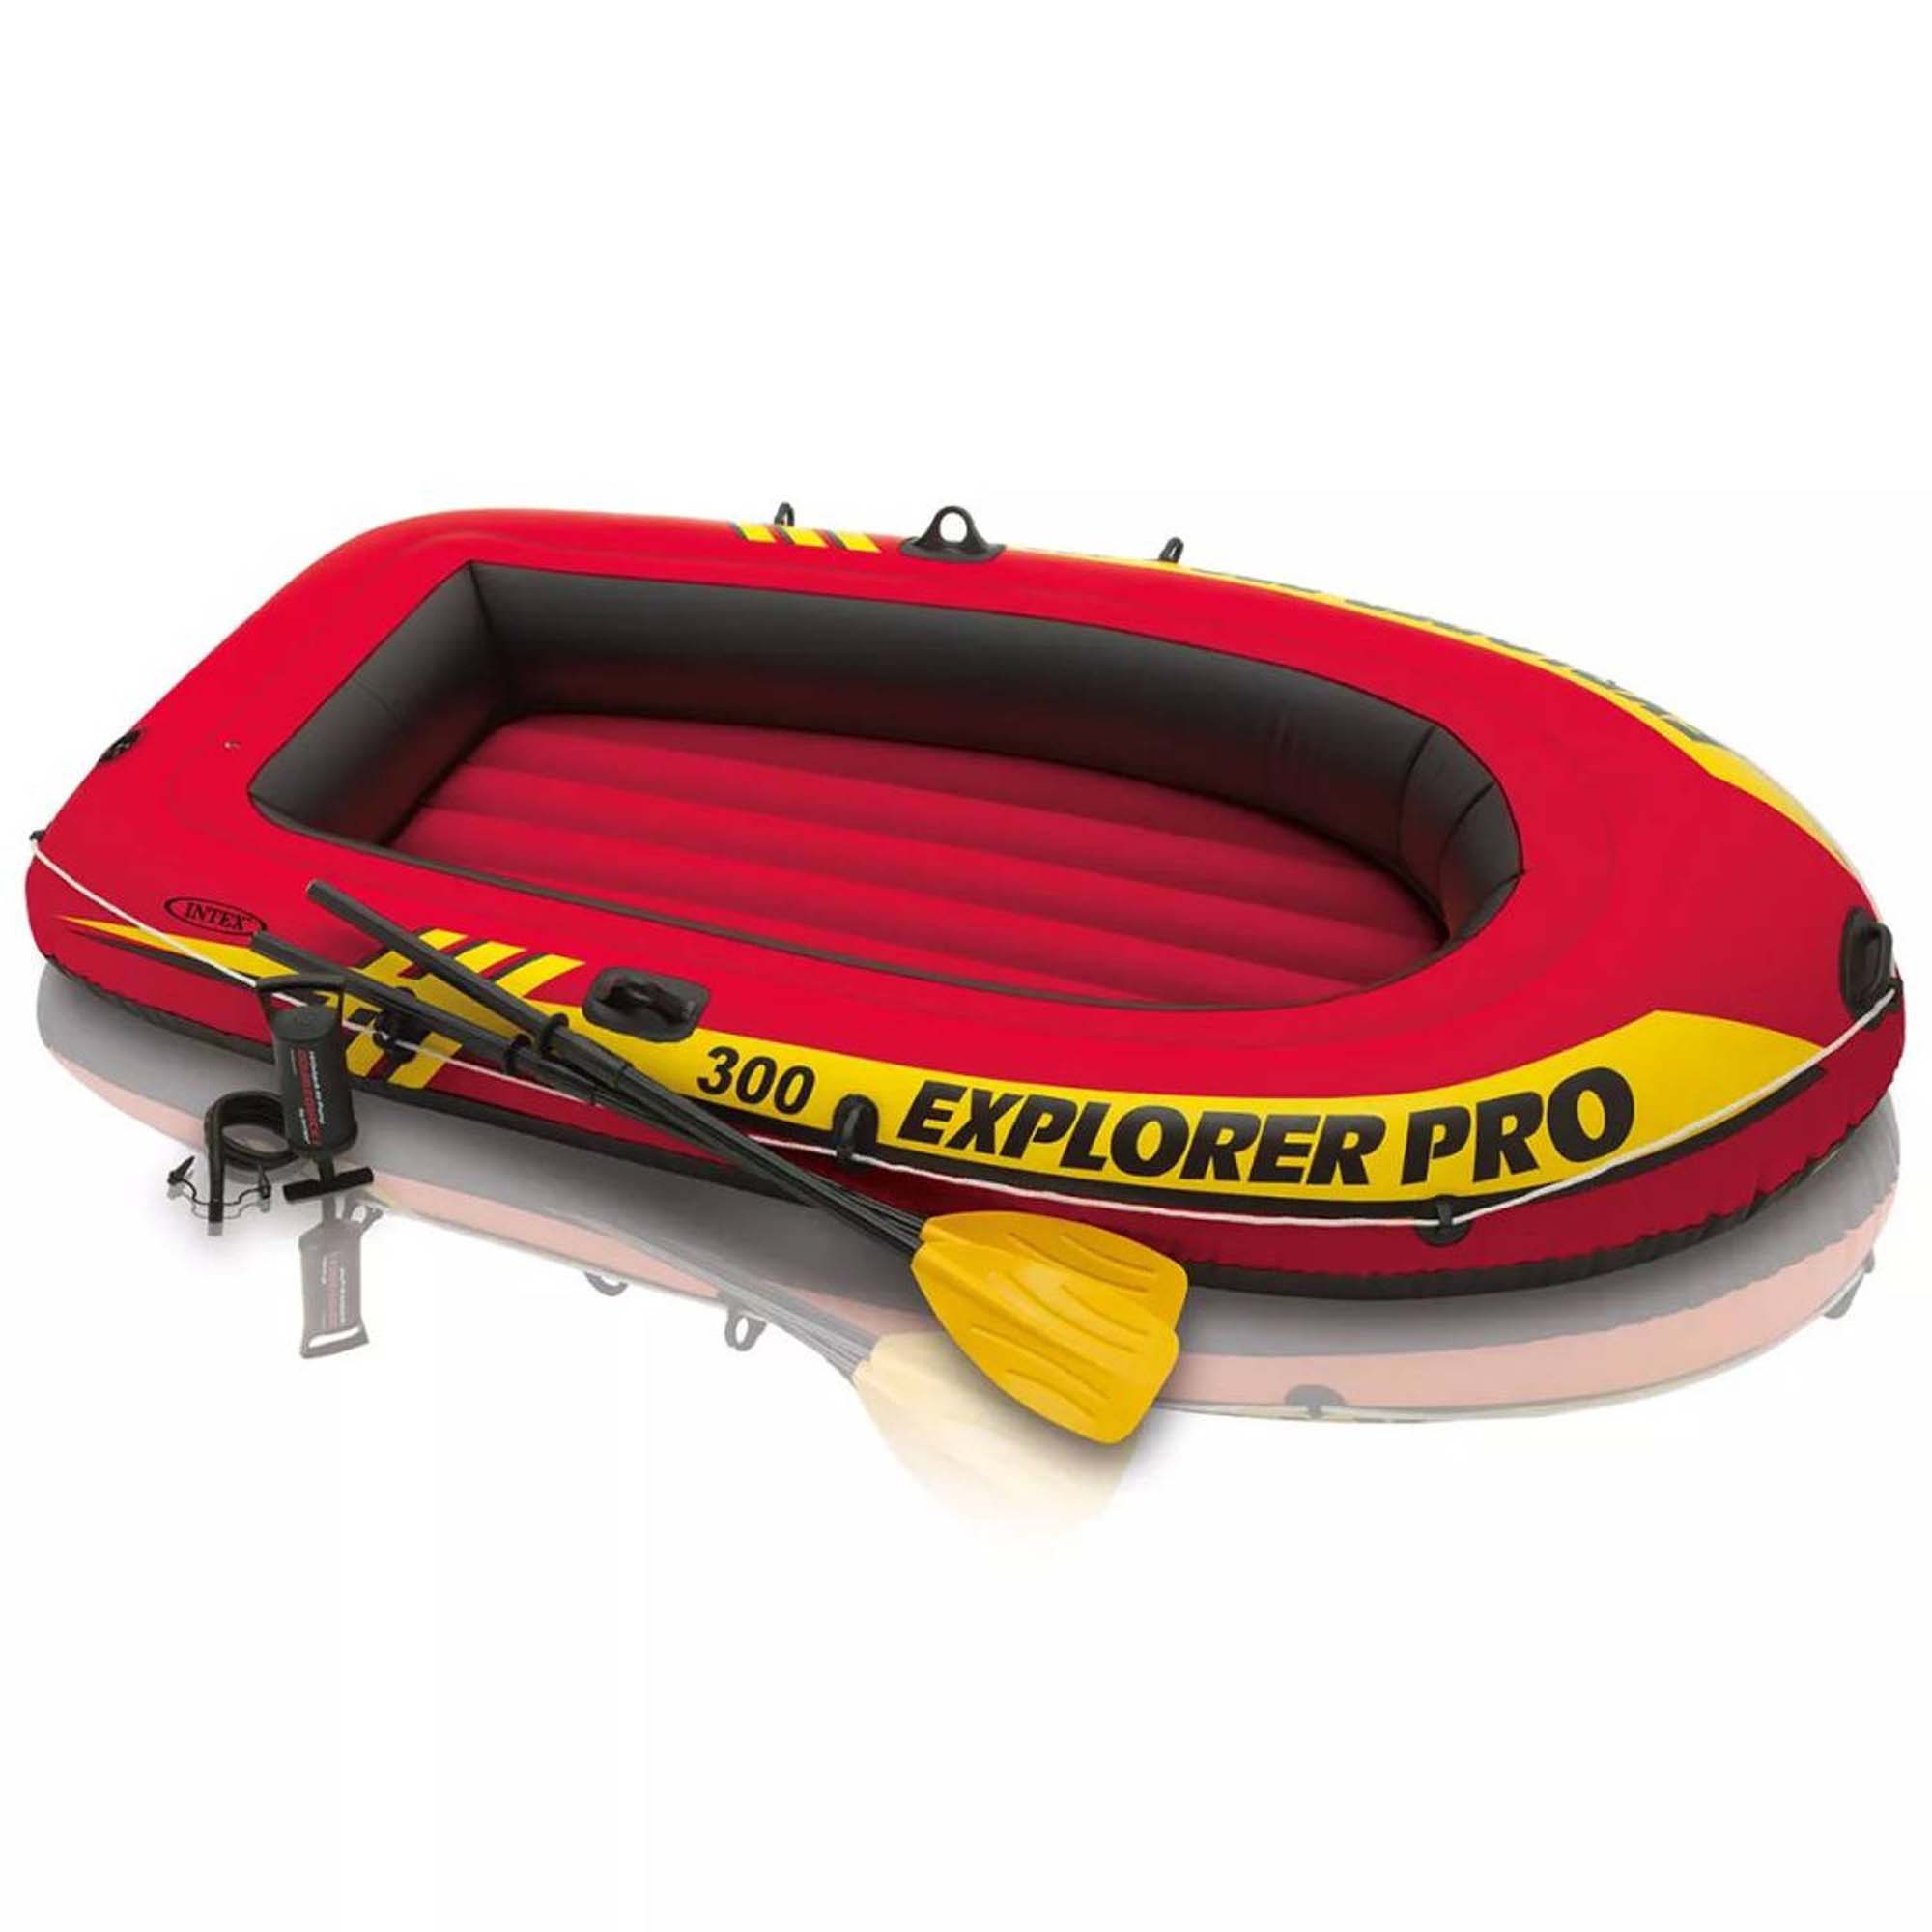 INTEX Explorer Pro 300 Boat Set